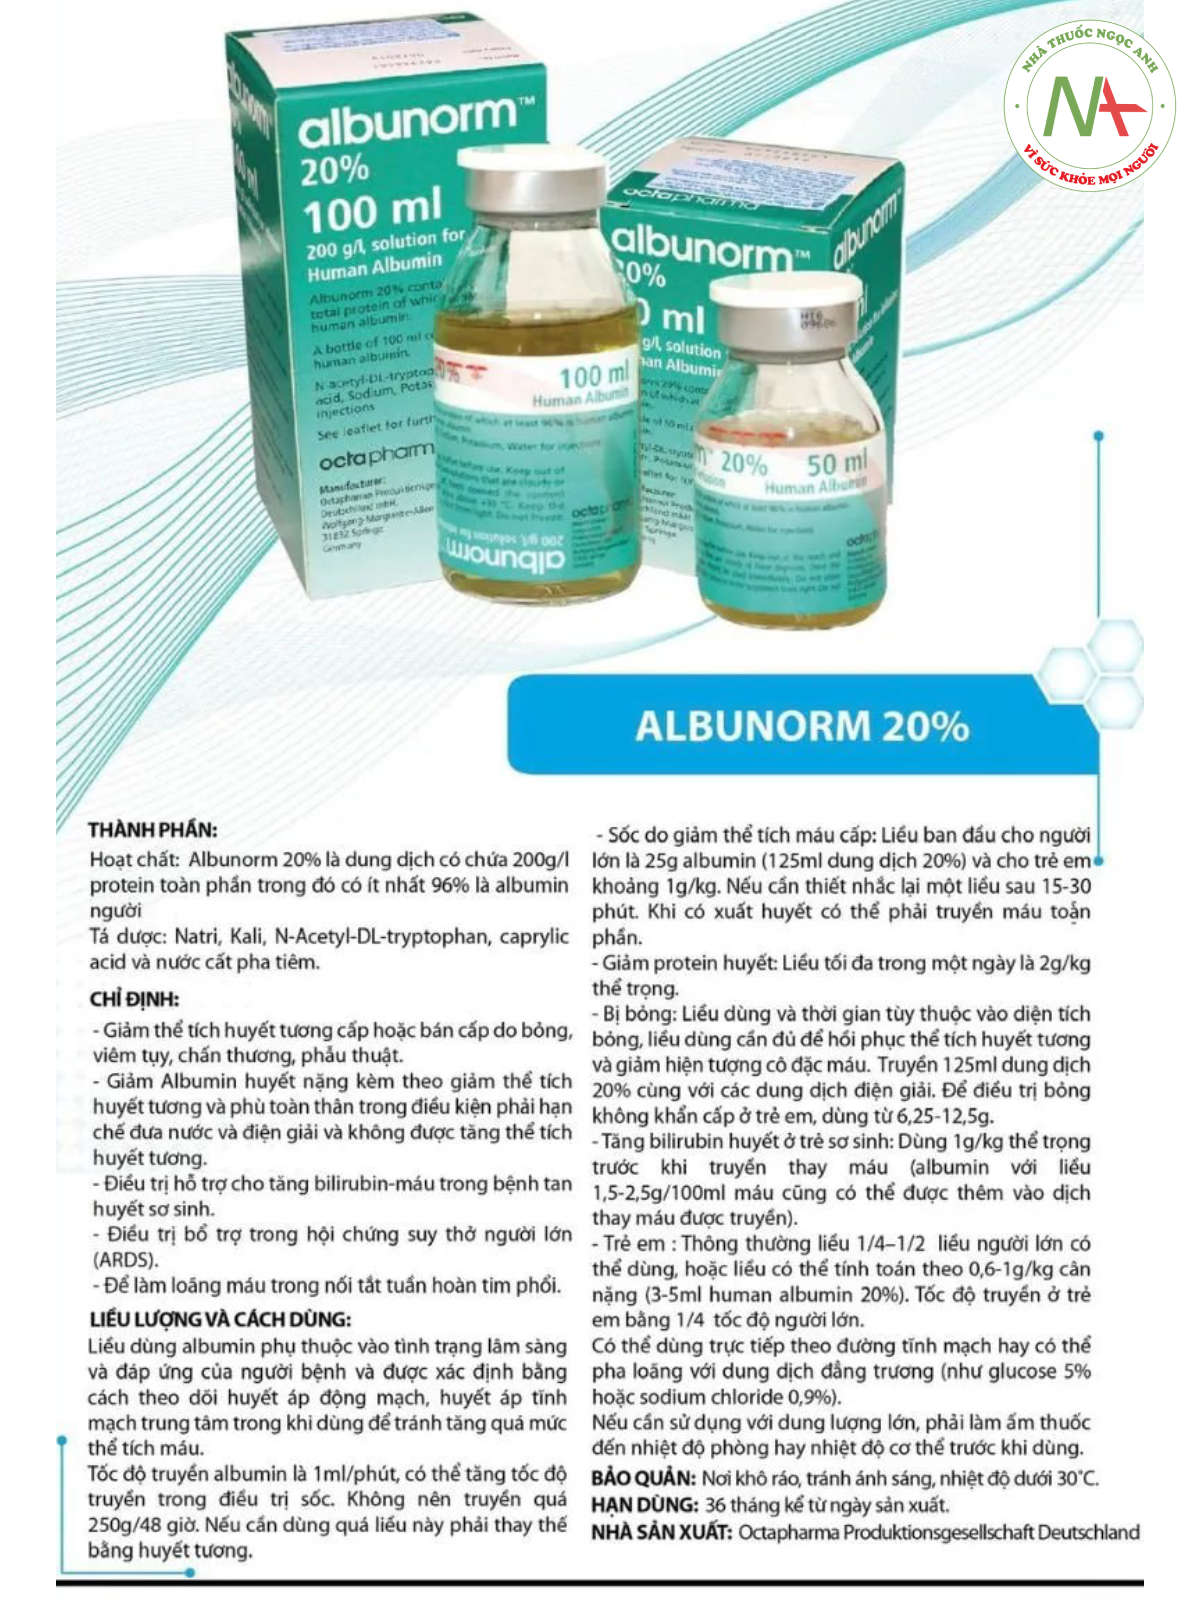 Hướng dẫn sử dụng thuốc Albunorm 20% 100ml